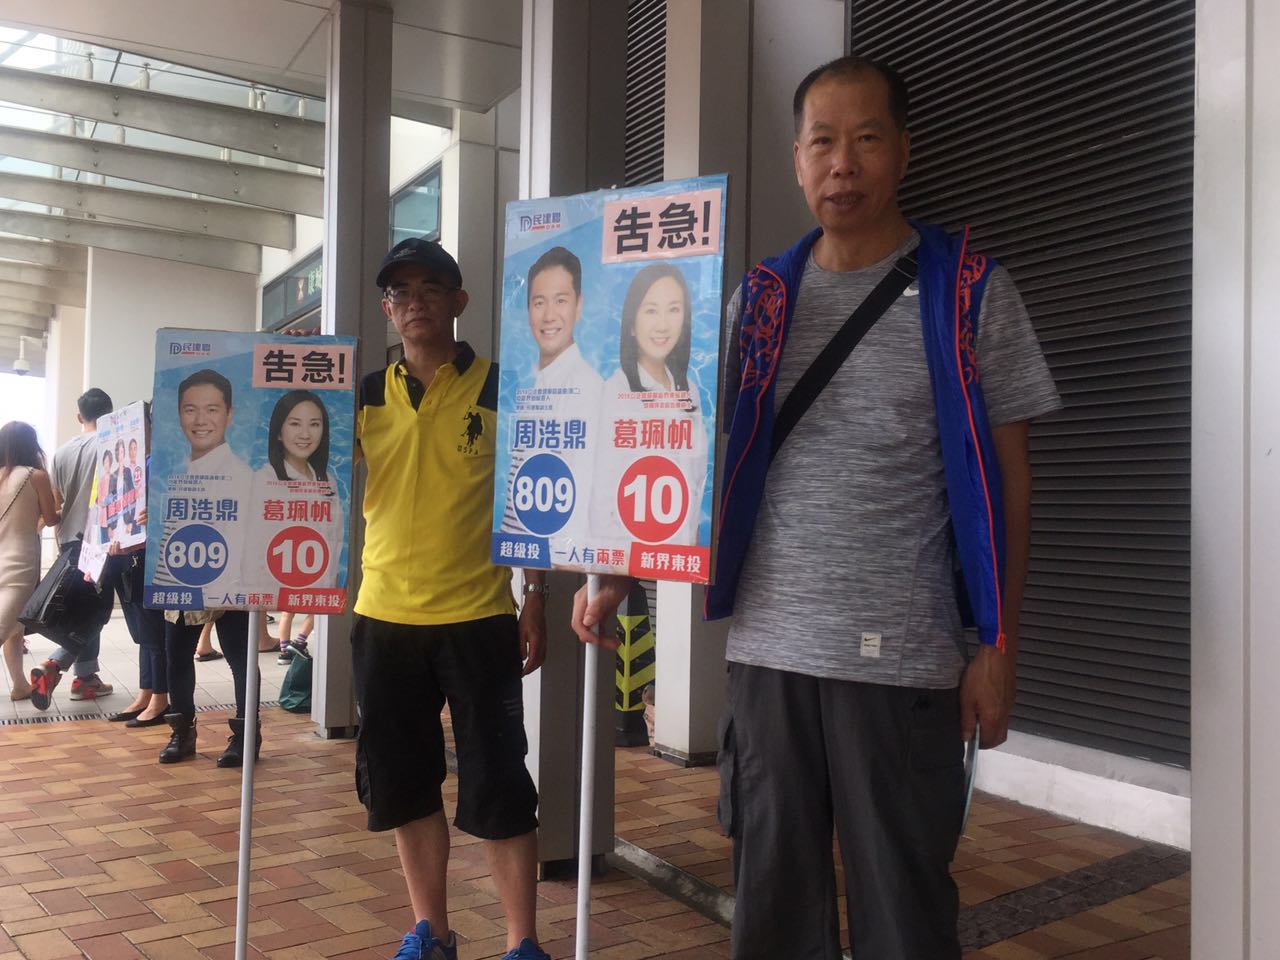 香港將軍澳康城地鐵站，周浩鼎、葛珮帆的助手豎起選情告急的牌匾。